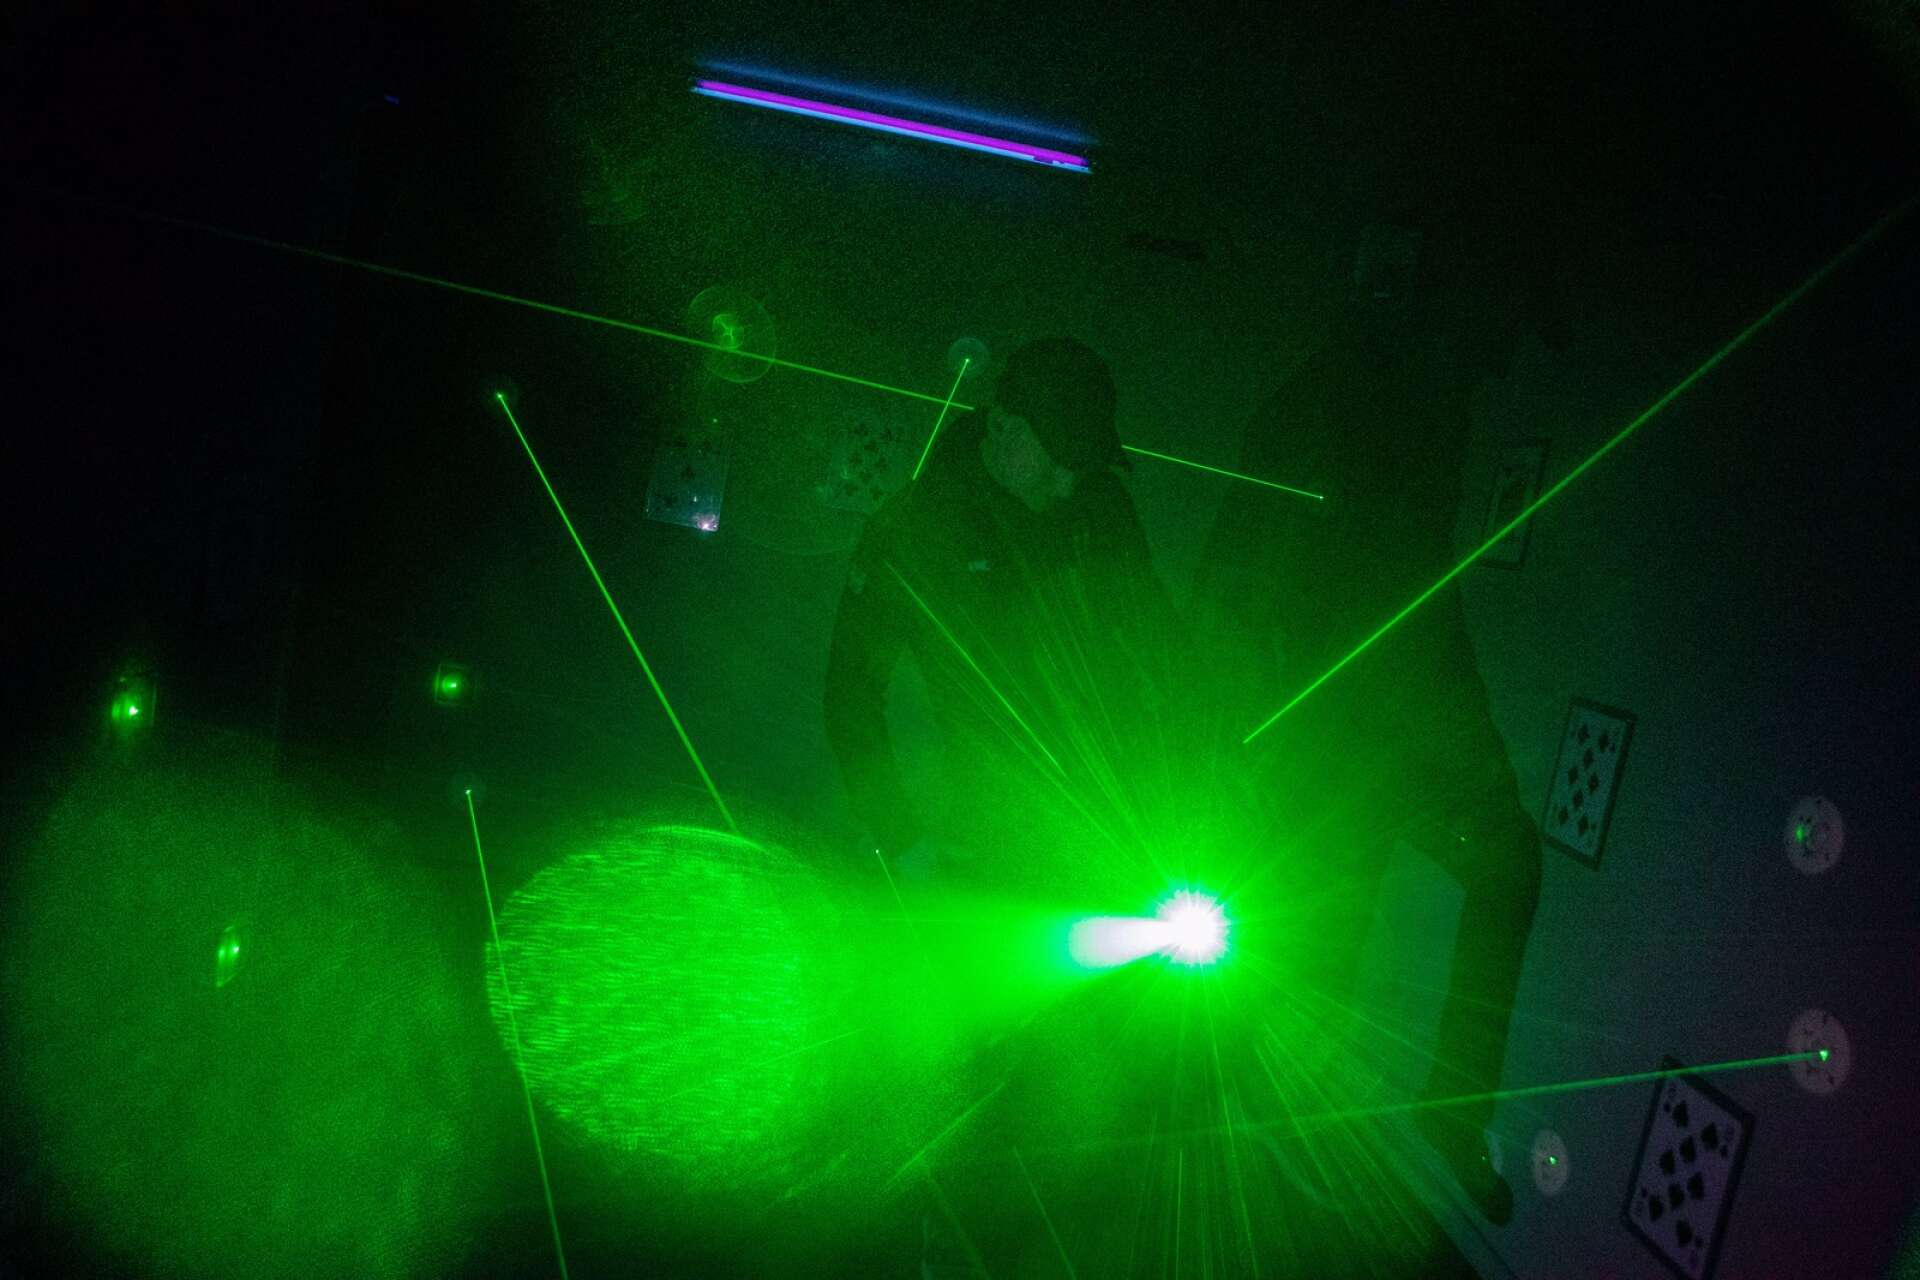 Med hjälp av laser går det att skapa häftiga effekter. Eric Schön har en talang för att bygga questar som utmanar såväl hjärnan som fysiken.